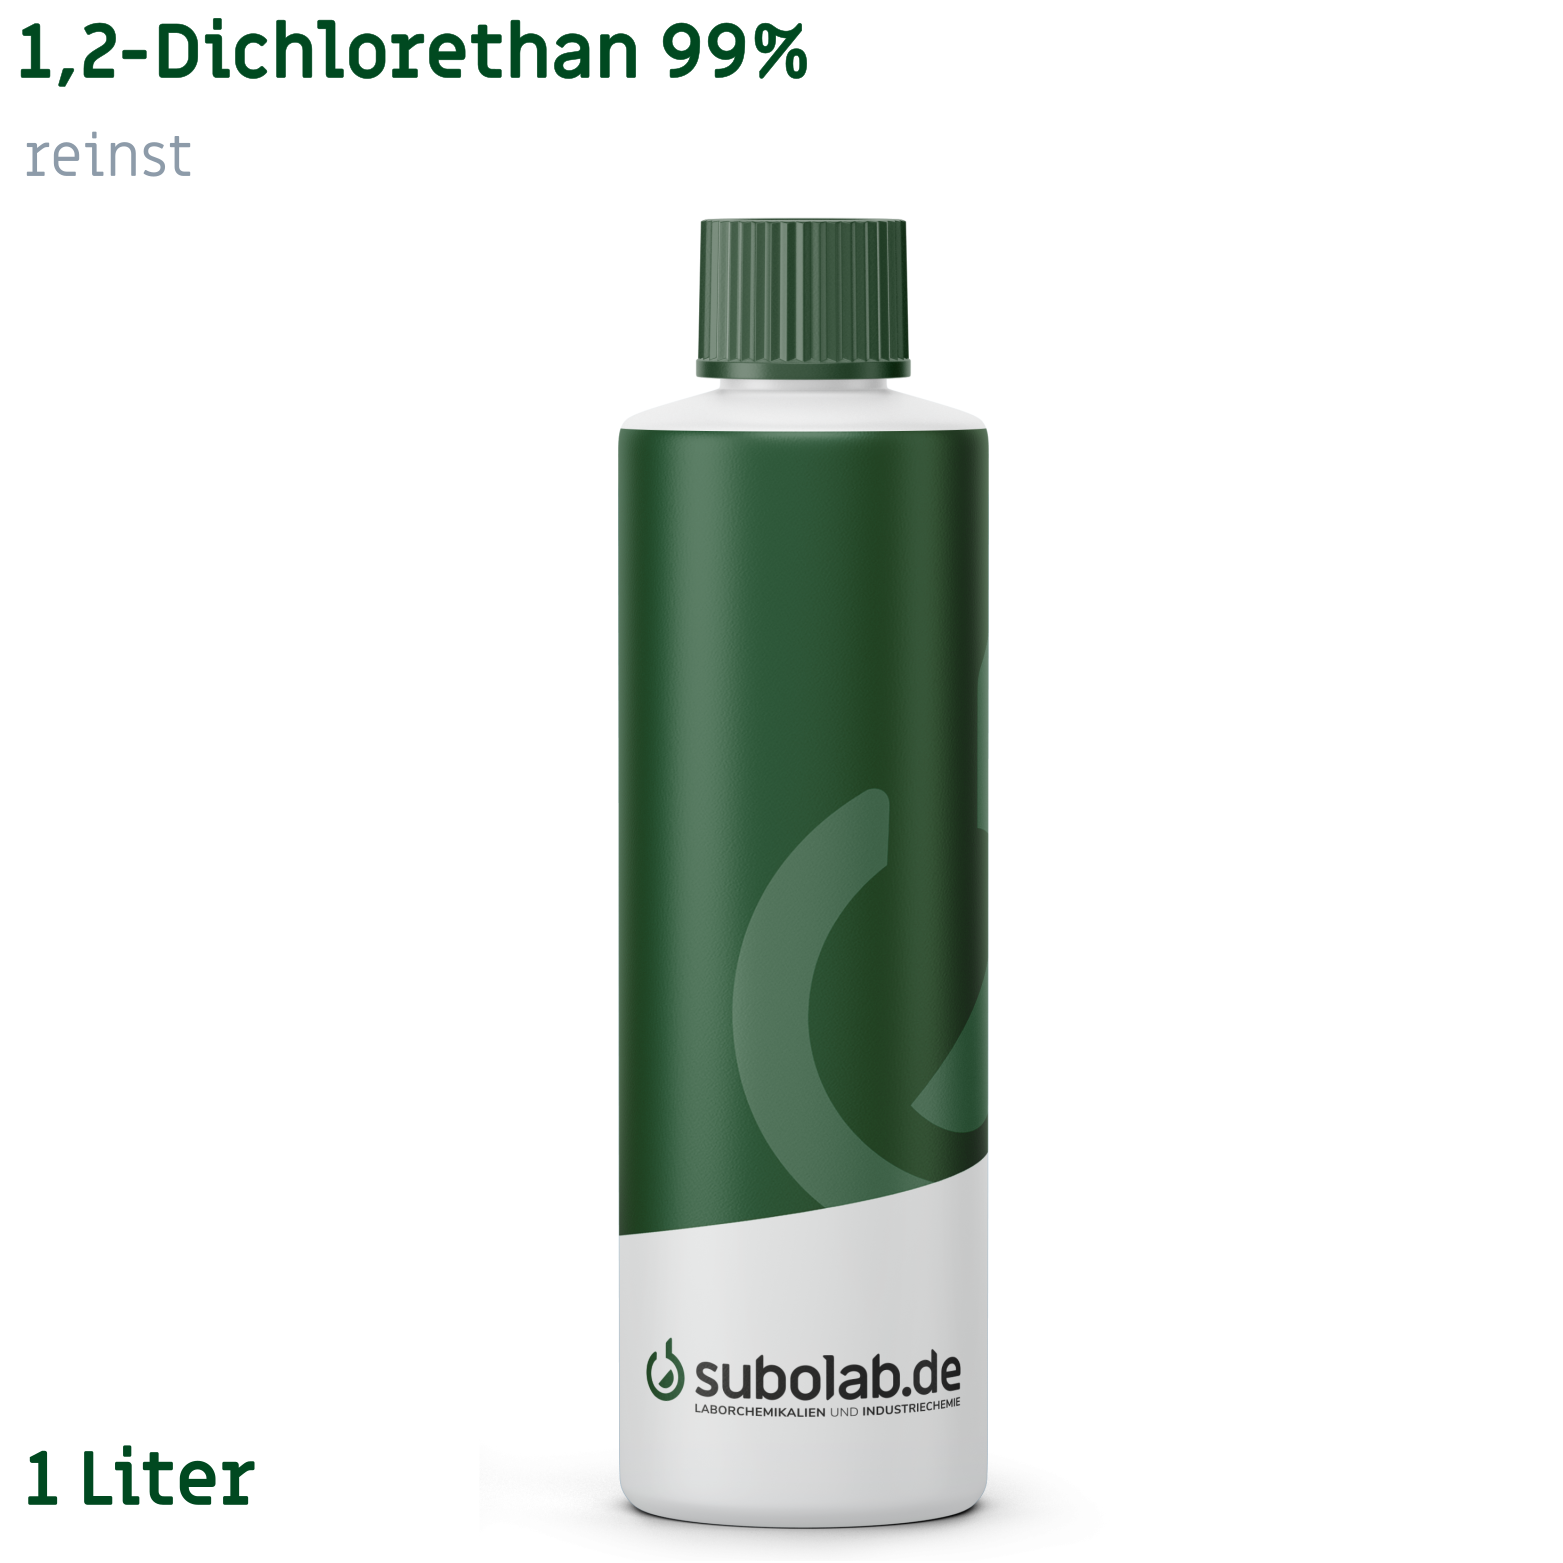 Bild von 1,2-Dichlorethan 99% reinst (1 Liter)